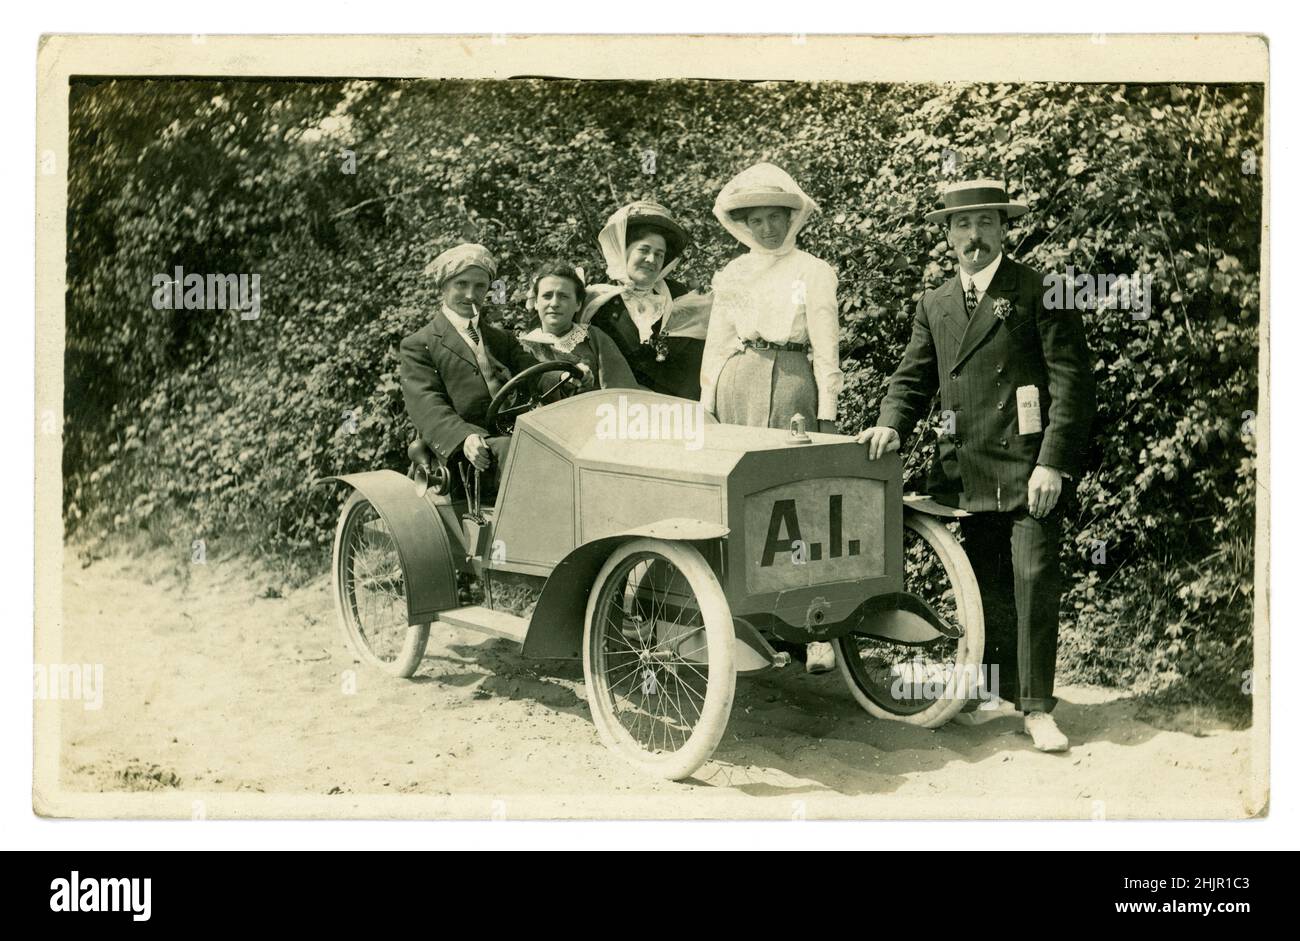 Originale amüsante Postkarte aus der Zeit des Edwardians mit glücklichen Touristen, Männern und Frauen, die Strohboote und Hüte tragen, in smarter sonntags bester Kleidung gekleidet sind, für ein Foto in einem Modellauto posten, fotografische (einige Charaktere) Requisiten, während eines Sommerurlaubs am Meer. Das Modellauto hat seltsamerweise die Buchstaben A.I. fotografiert von H. Batty, The Jetty Studio, Clacton-on-Sea, Essex, Großbritannien um 1910, 1912. Stockfoto